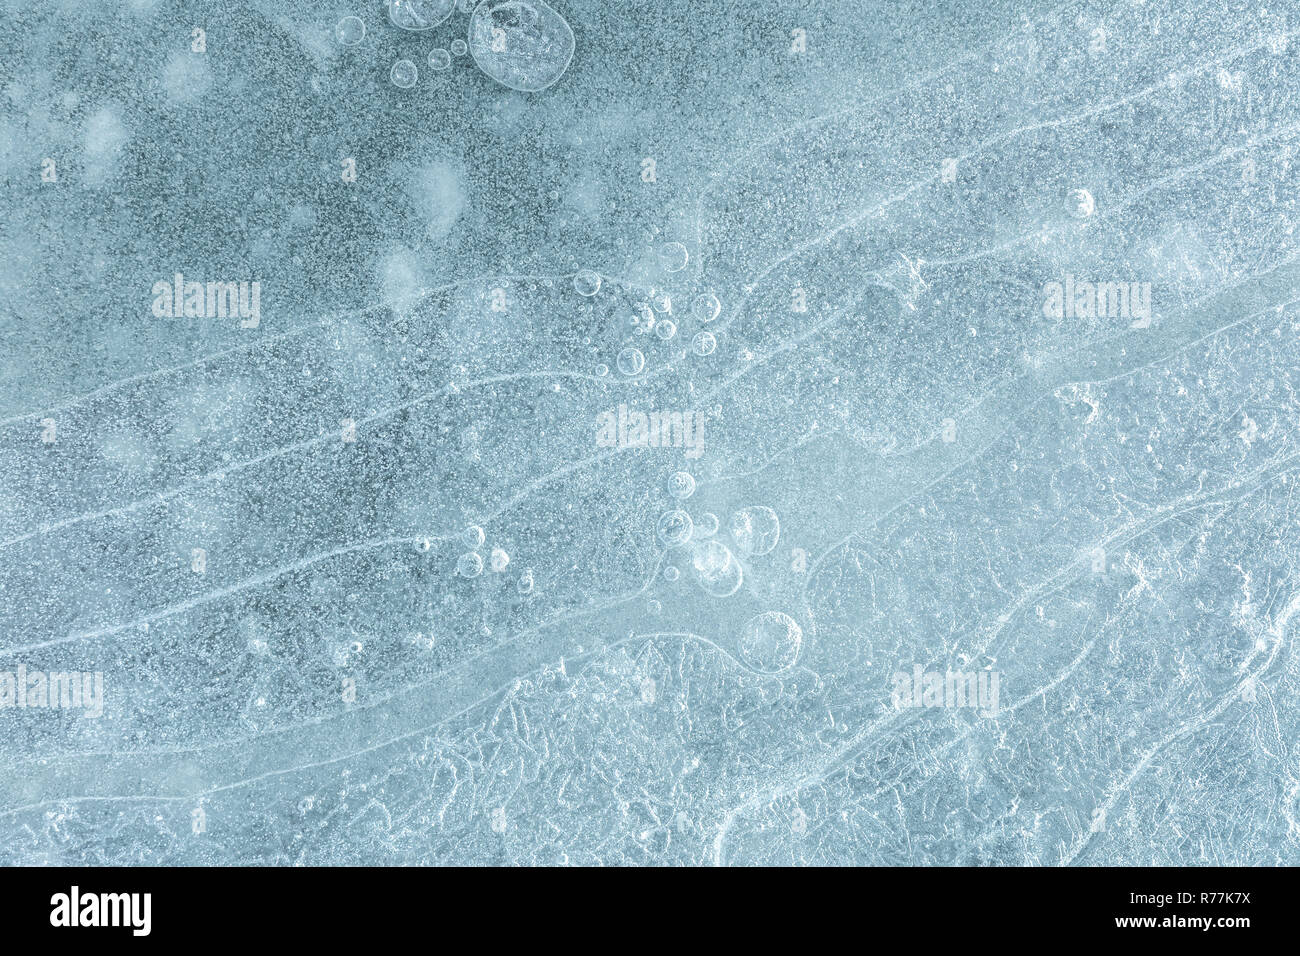 Rissige Oberfläche Muster des gefrorenen Wassers Oberfläche. Natürliche winter Textur Stockfoto